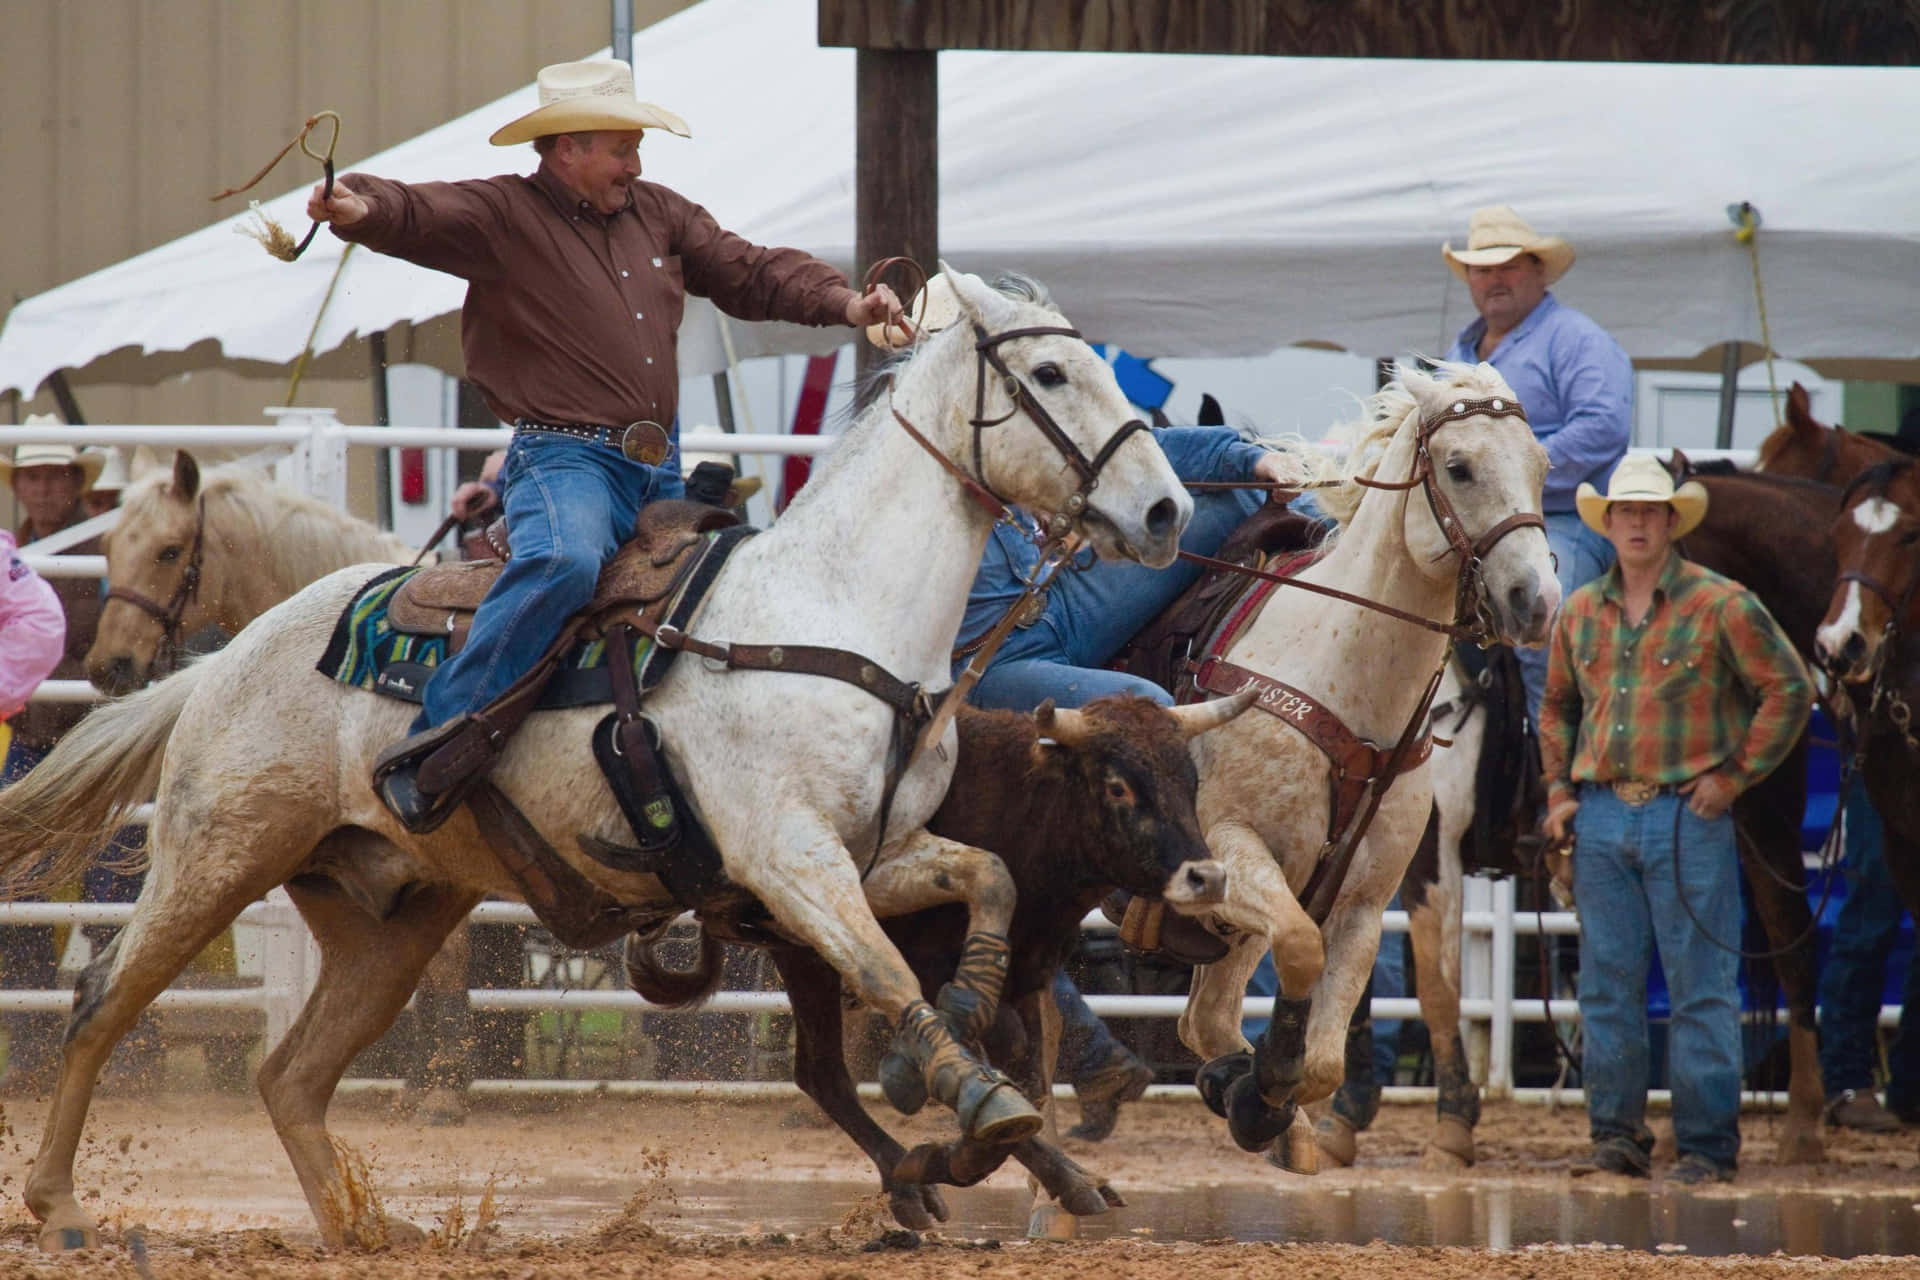 Klar til at ride – Rodeo Cowboys viser deres ridning færdigheder Wallpaper